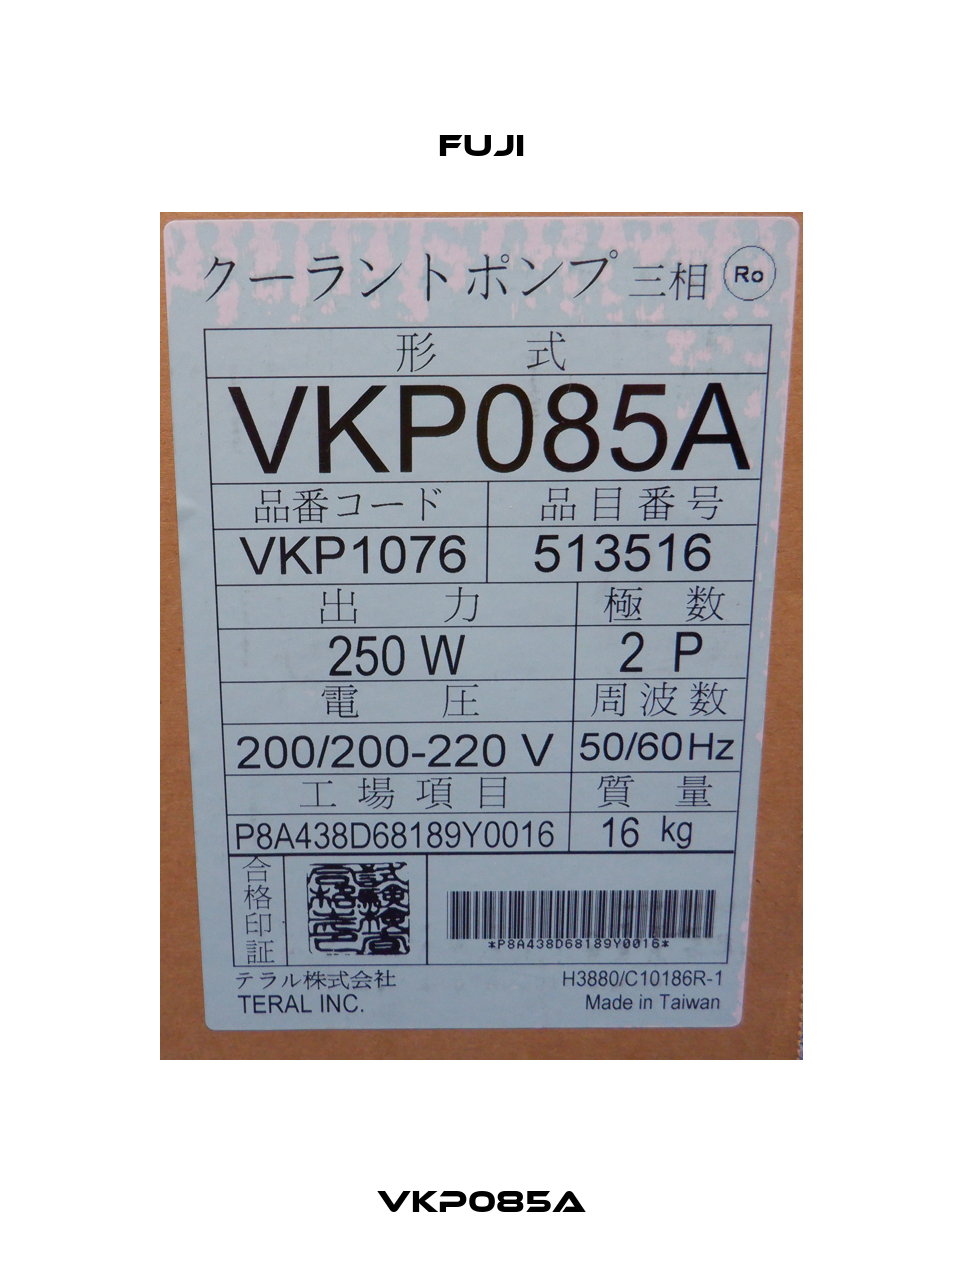 VKP085A Fuji